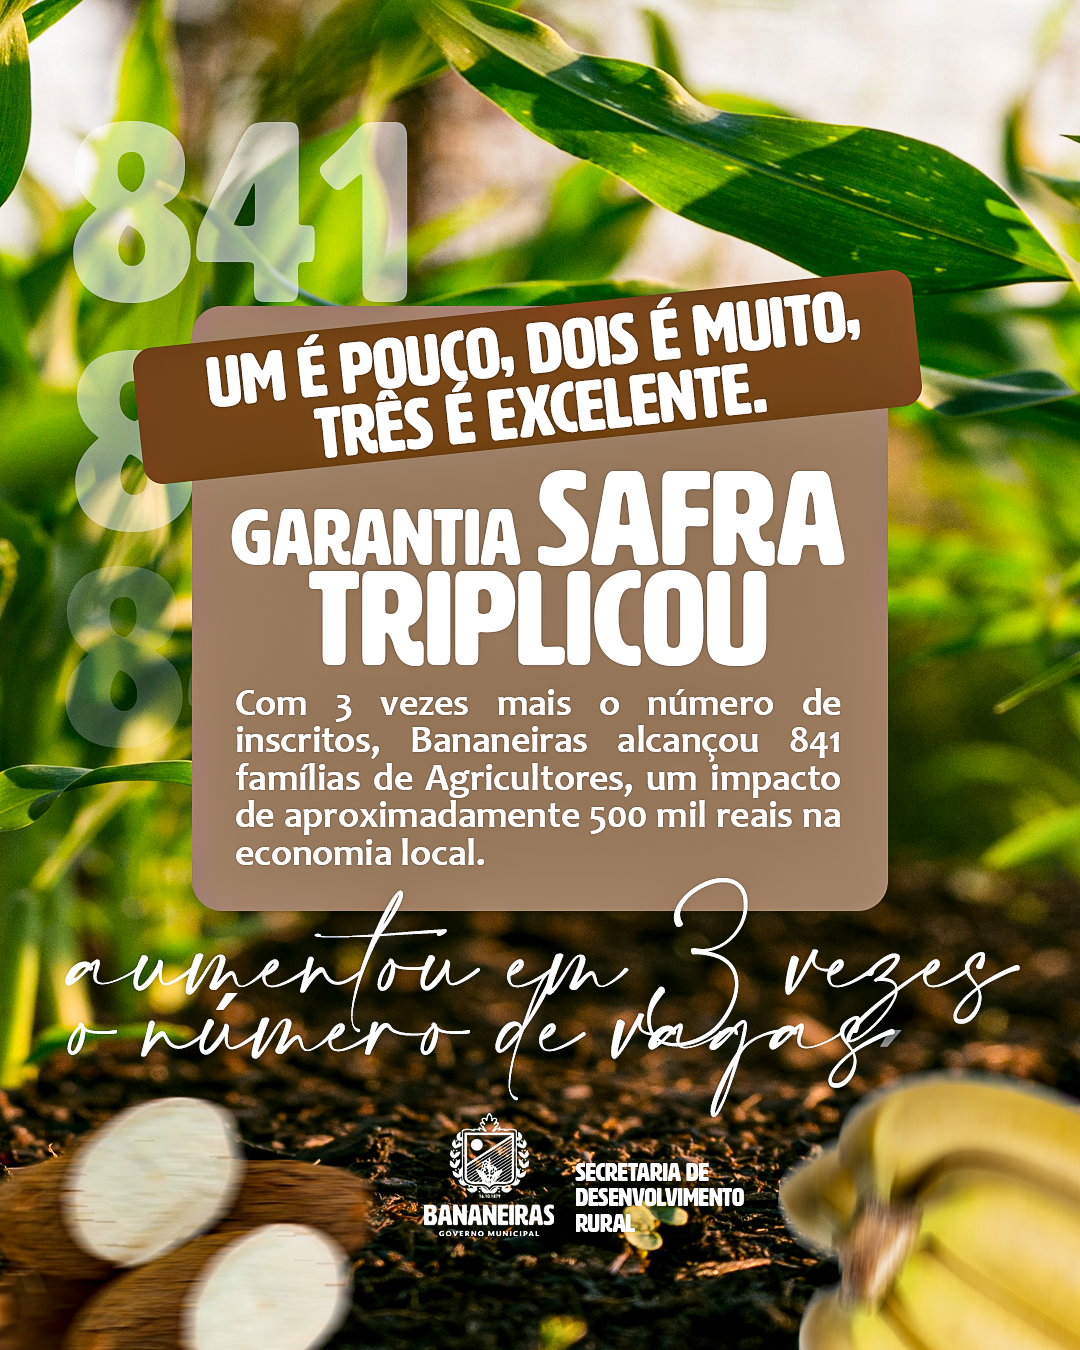 Agricultura familiar em Bananeiras ganha reforço com 570 vagas no Garantia Safra